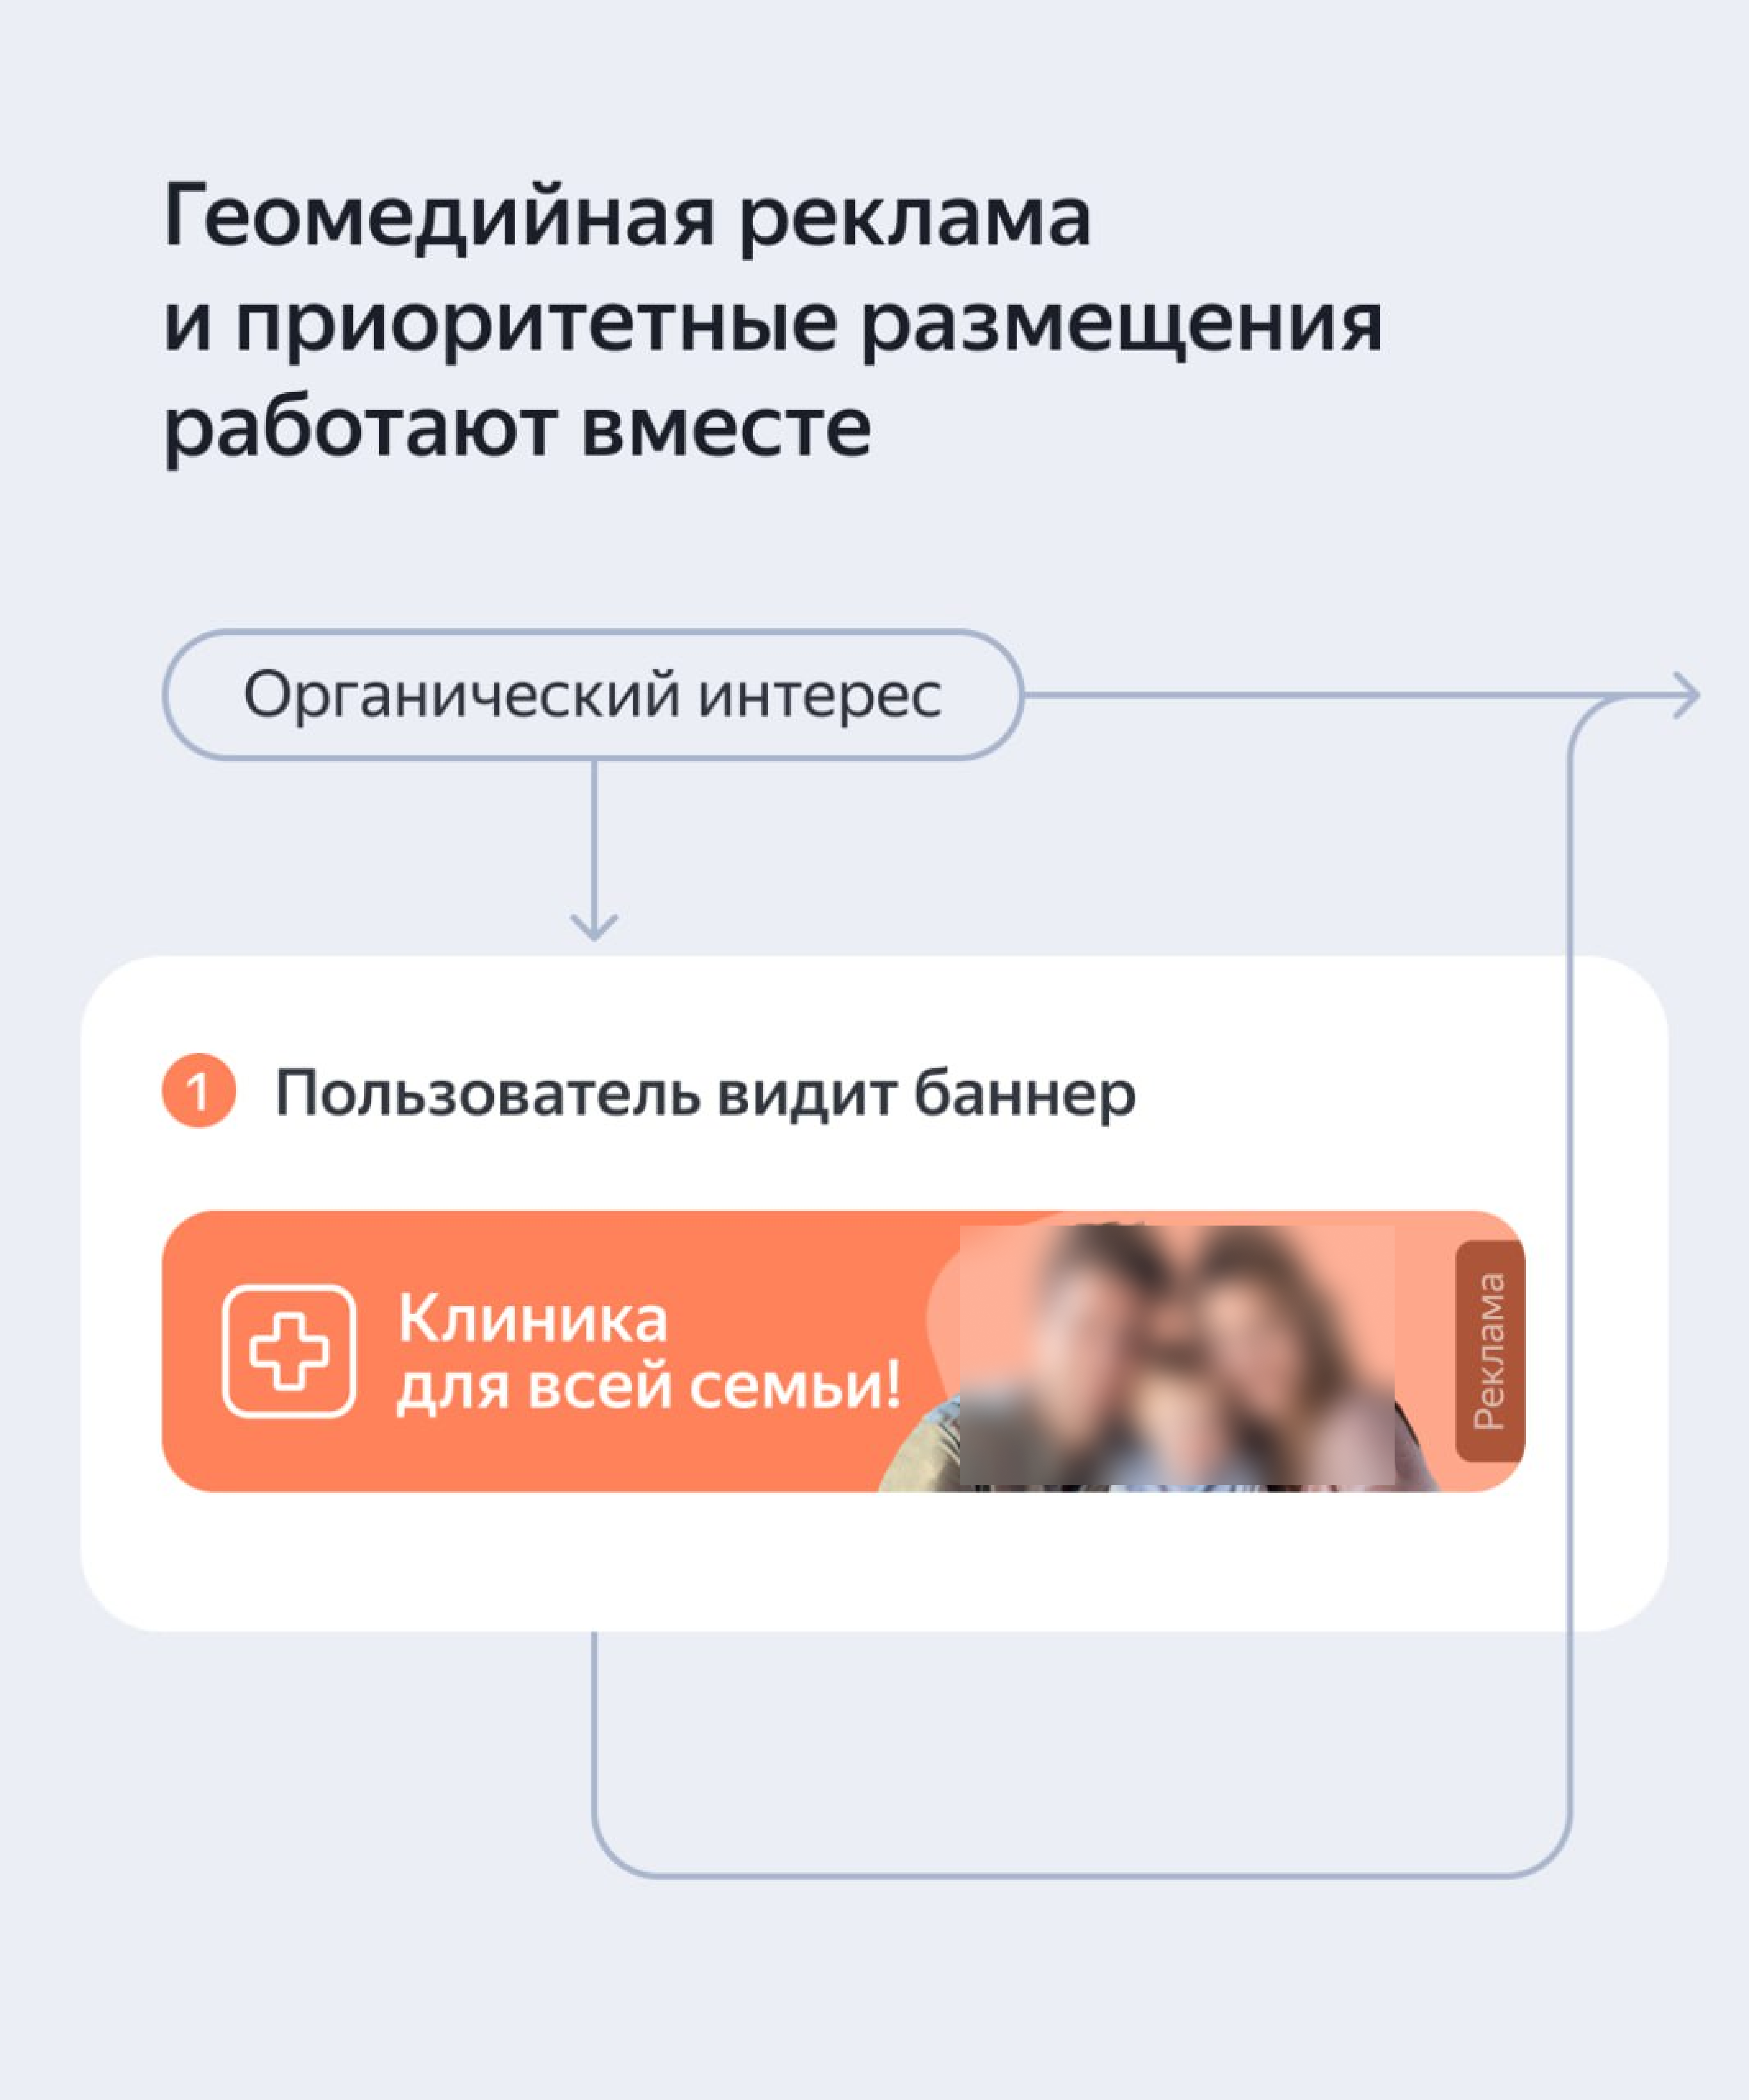 Реклама в геосервисах Яндекса